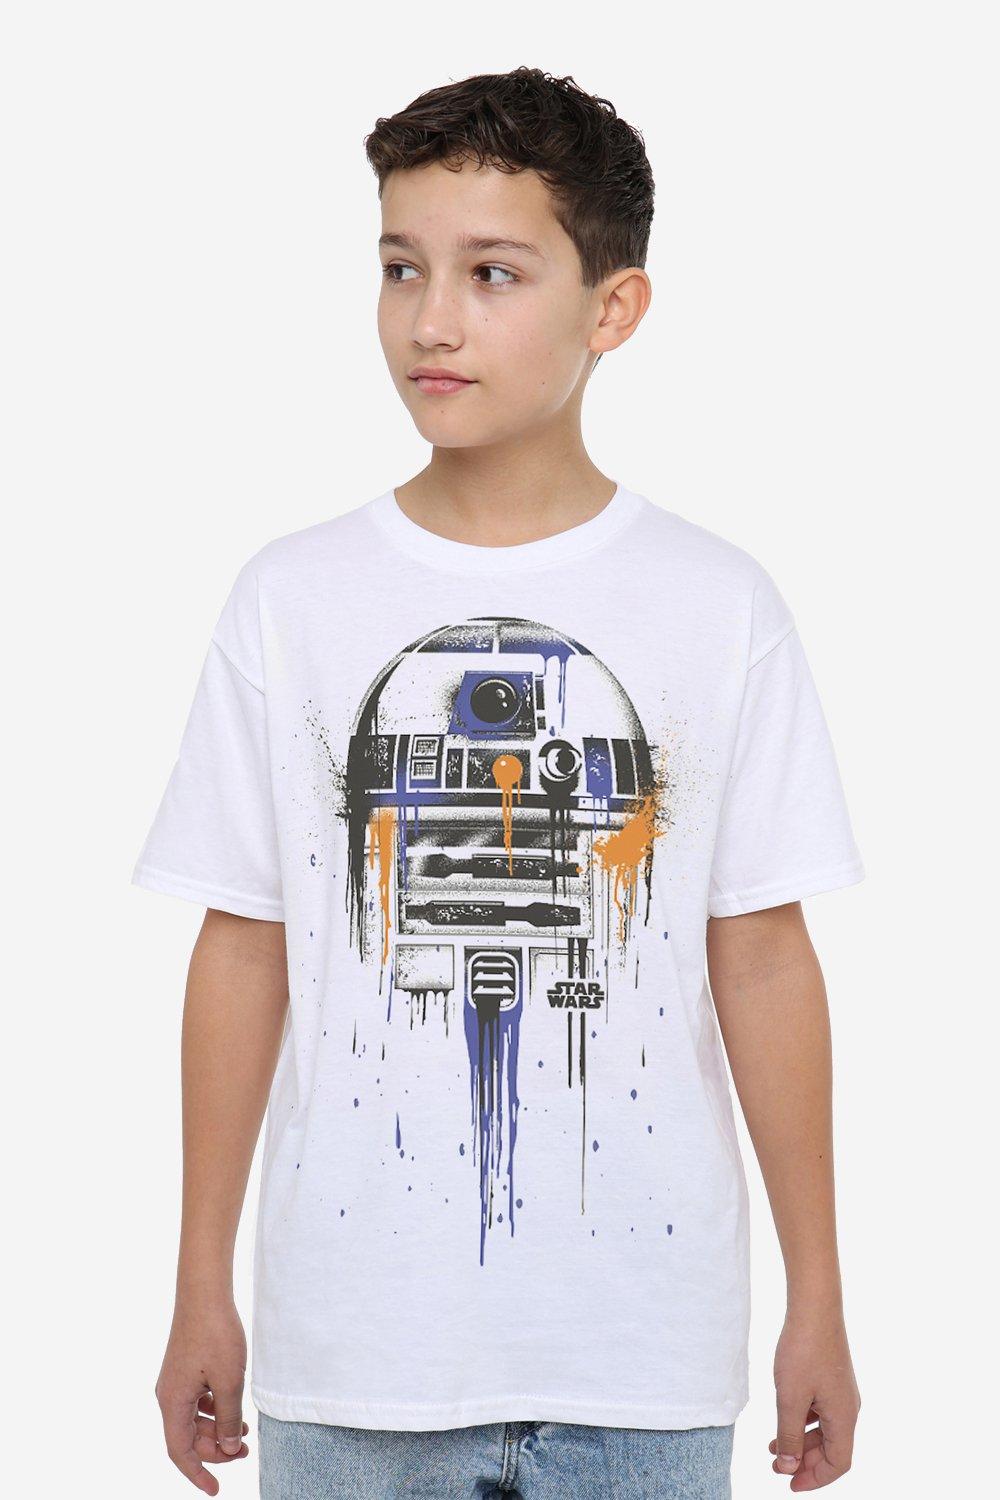 R2D2 Paint Drip T-Shirt